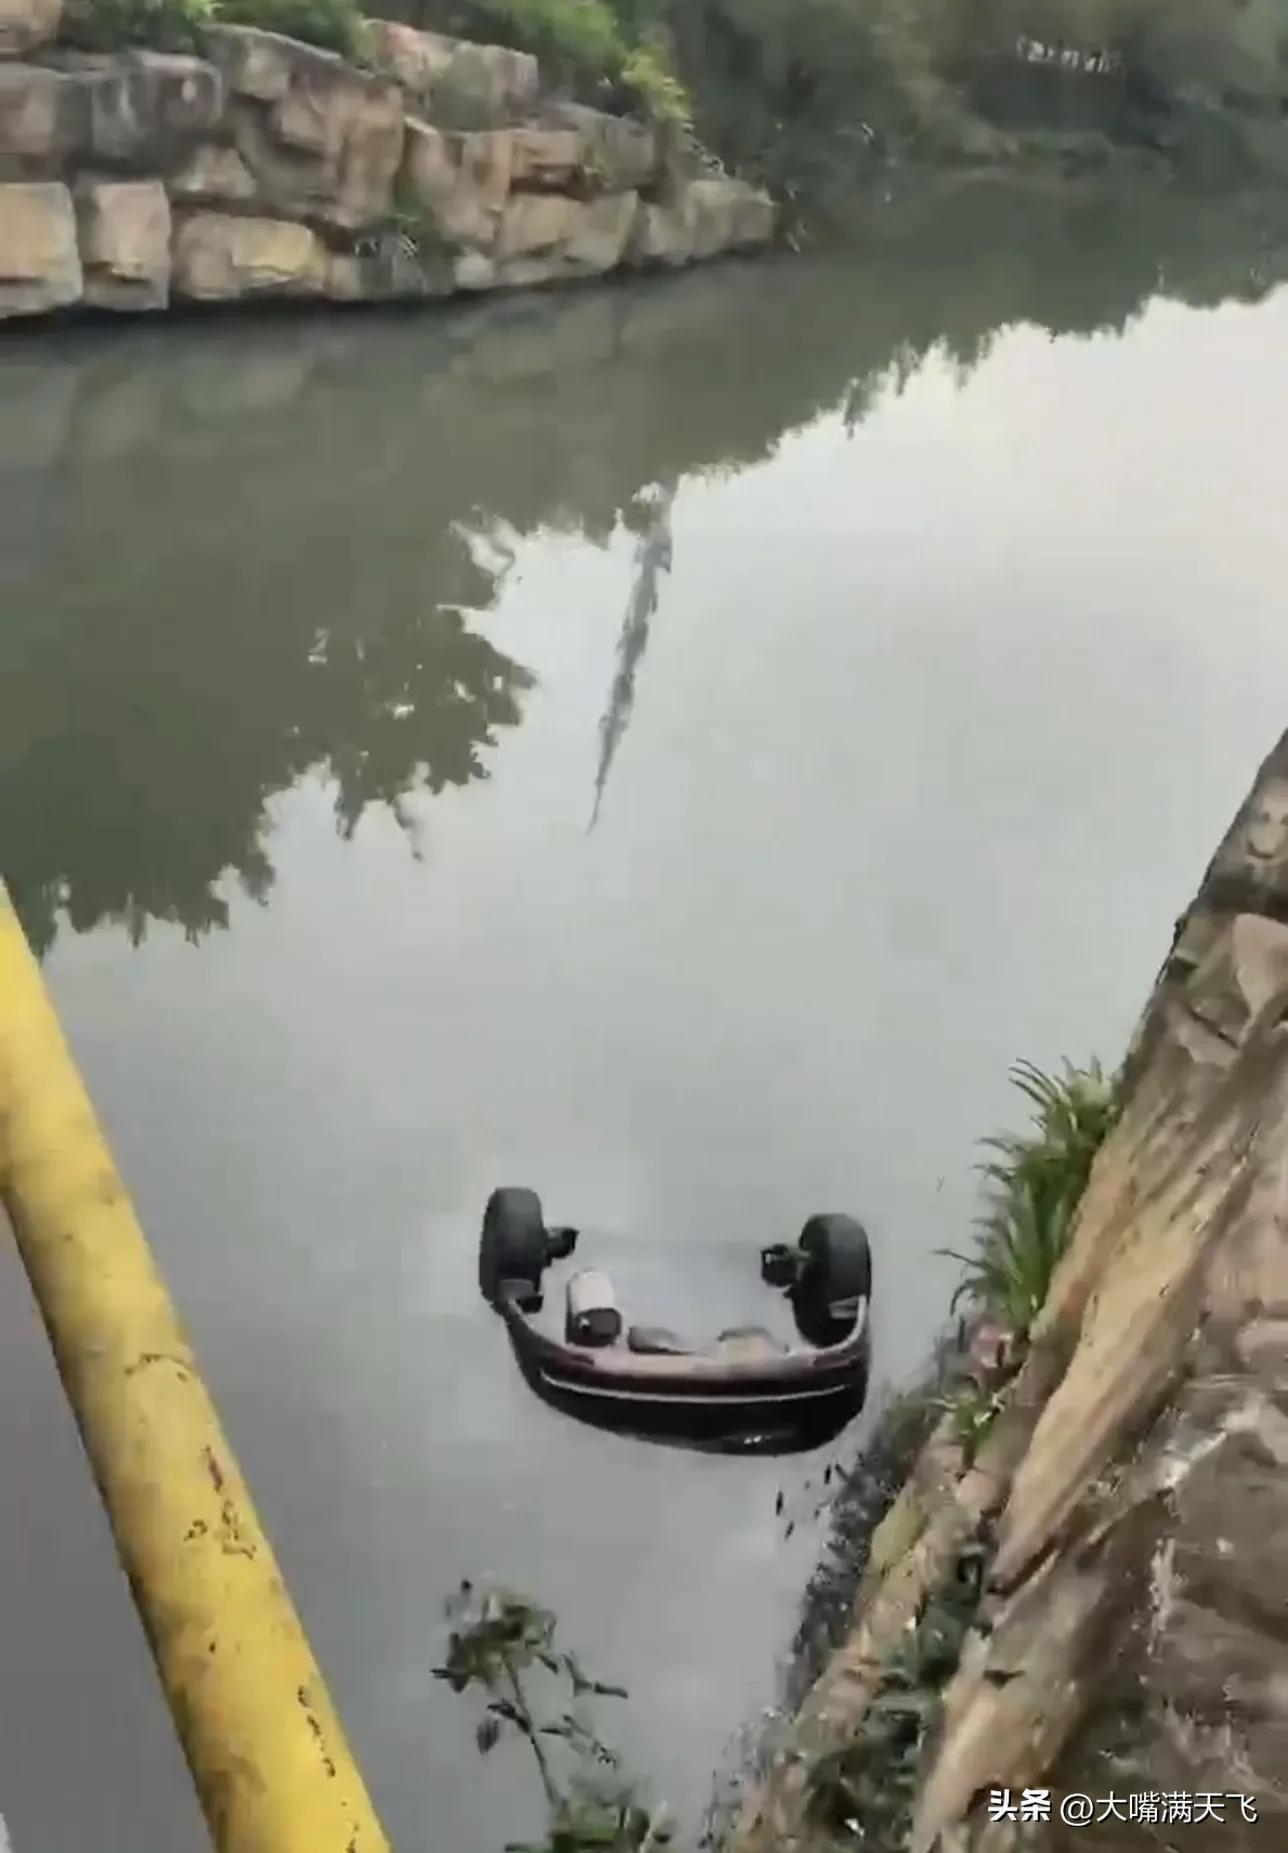 车位被占男子把占位车丢河里,究竟是怎么一回事?